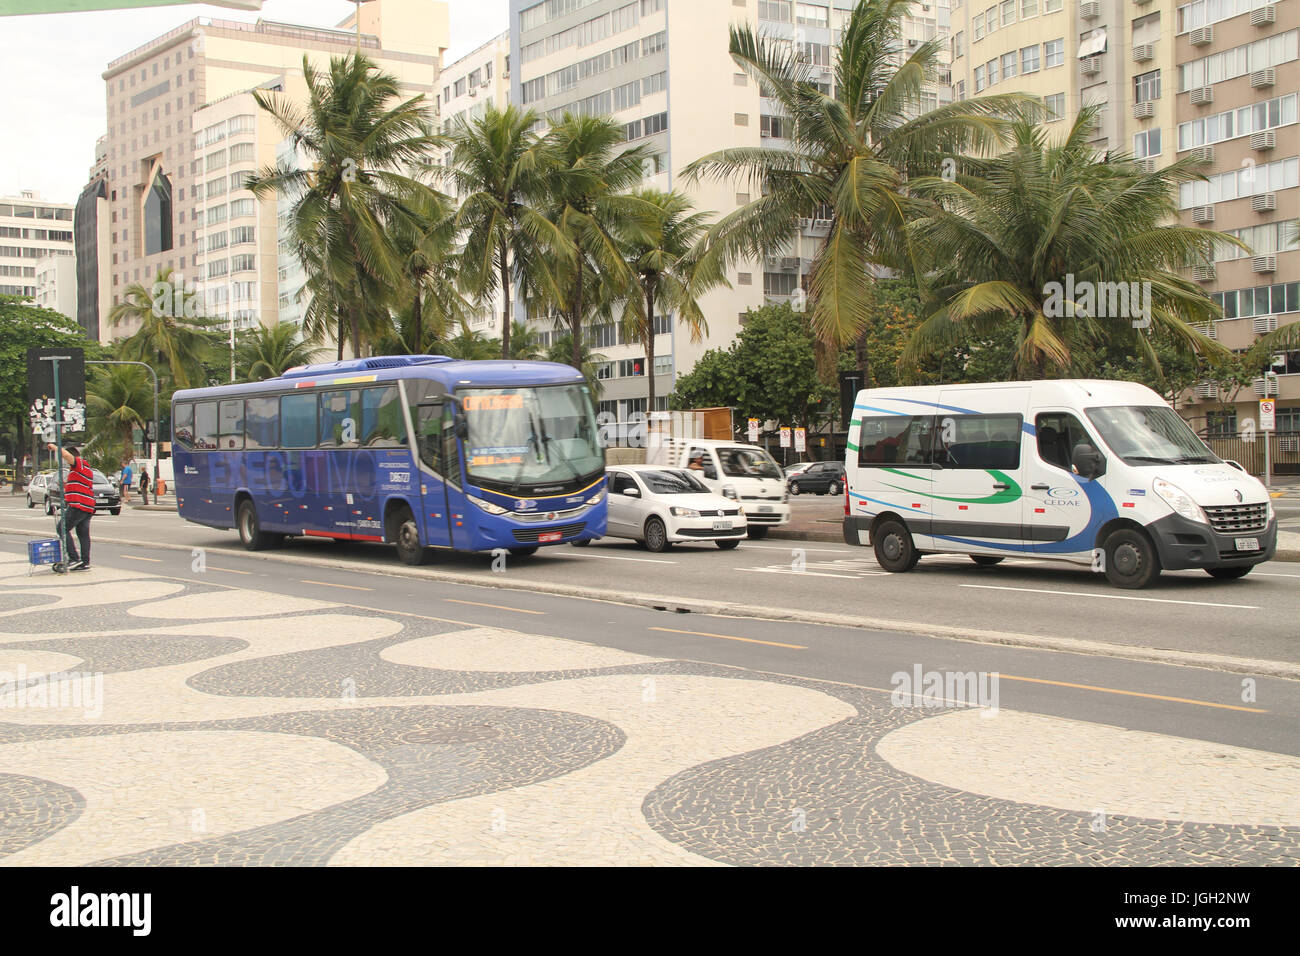 Calçadão Copacabana, 2016, Atlantica Avenue, Copacabana, Rio de Janeiro, Brazil. Stock Photo